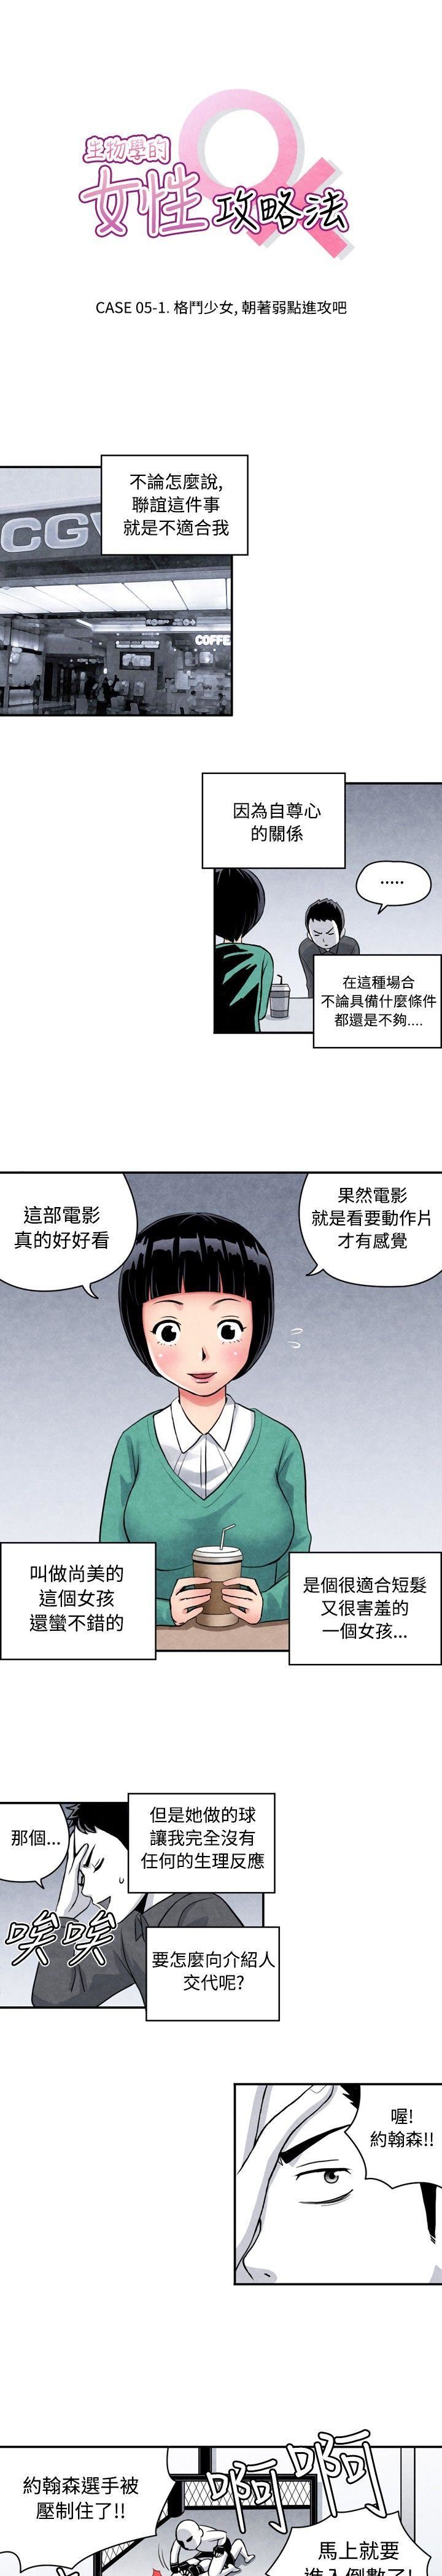 韩国污漫画 生物學的女性攻略法 CASE05-1.格斗少女 1